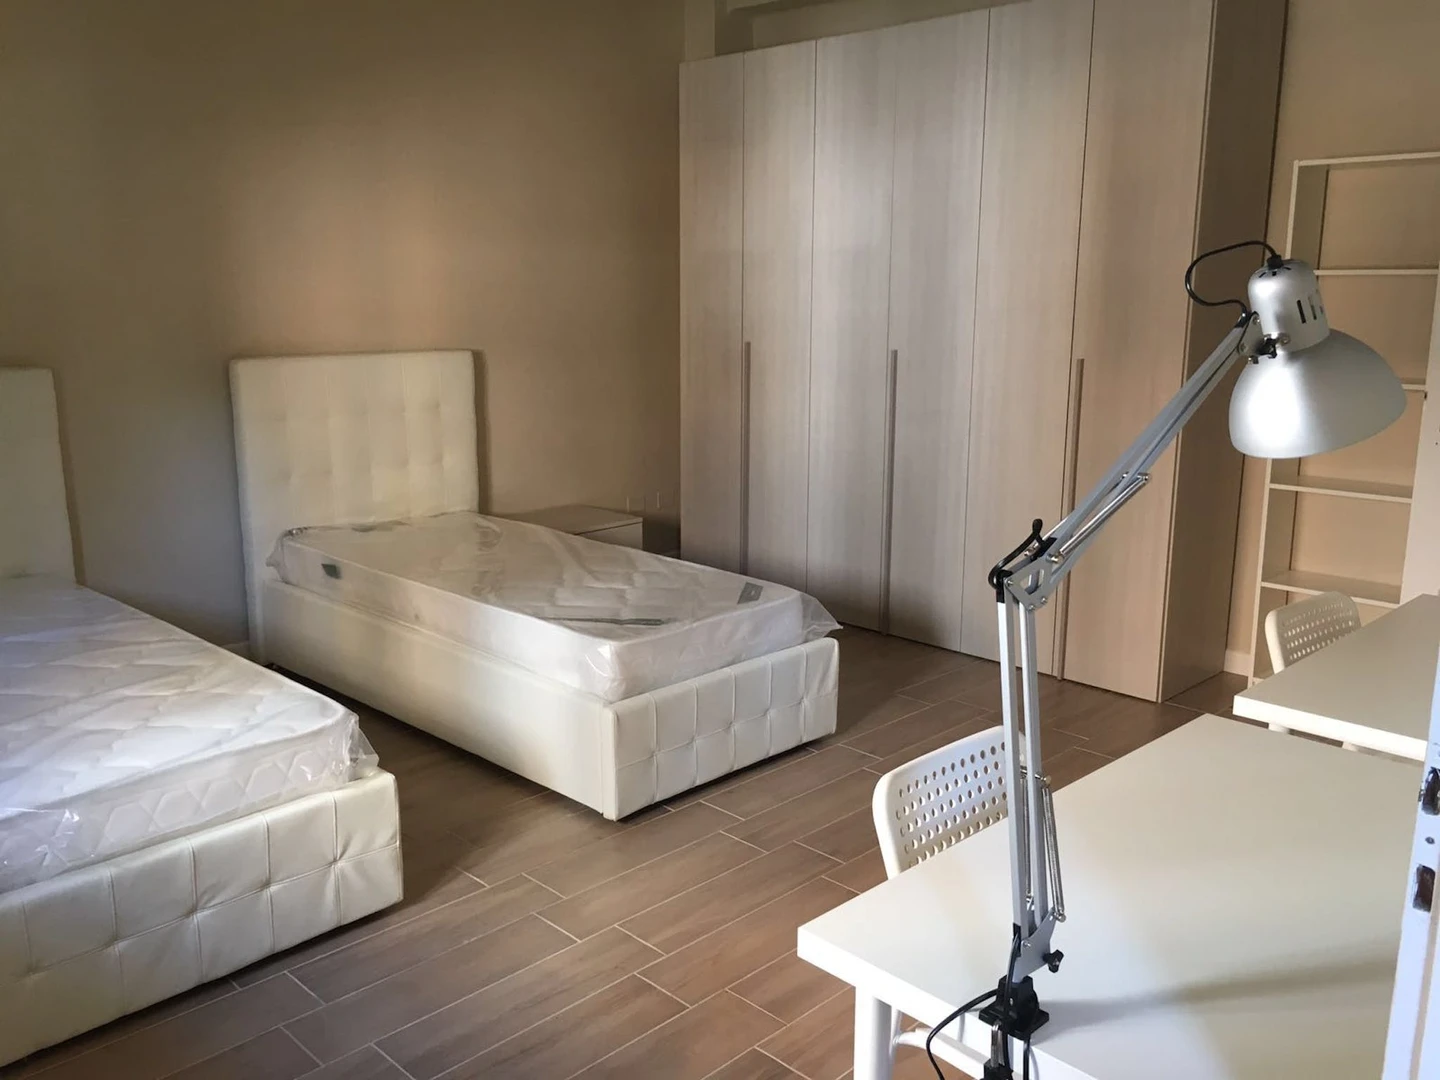 Habitación compartida barata en Bolonia